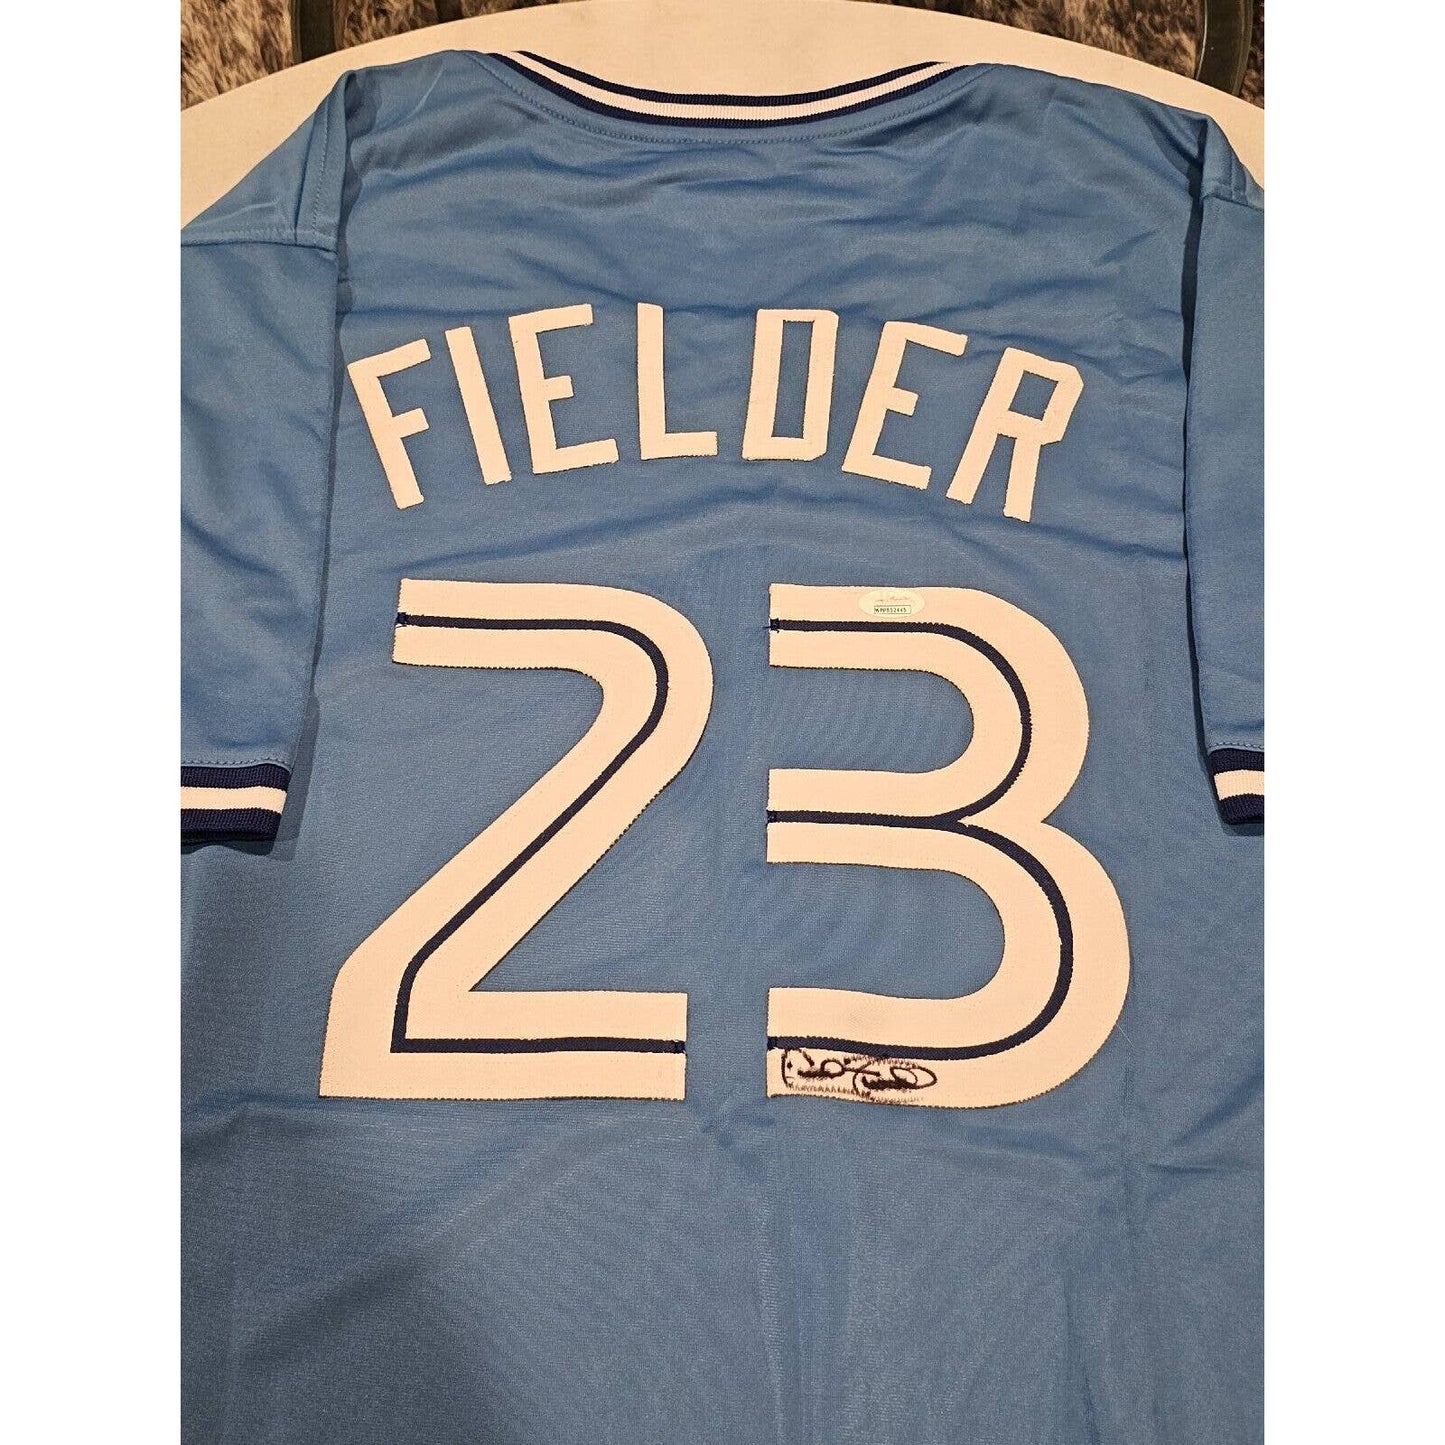 Cecil Fielder Autographed/Signed Jersey JSA Sticker Toronto Blue Jays